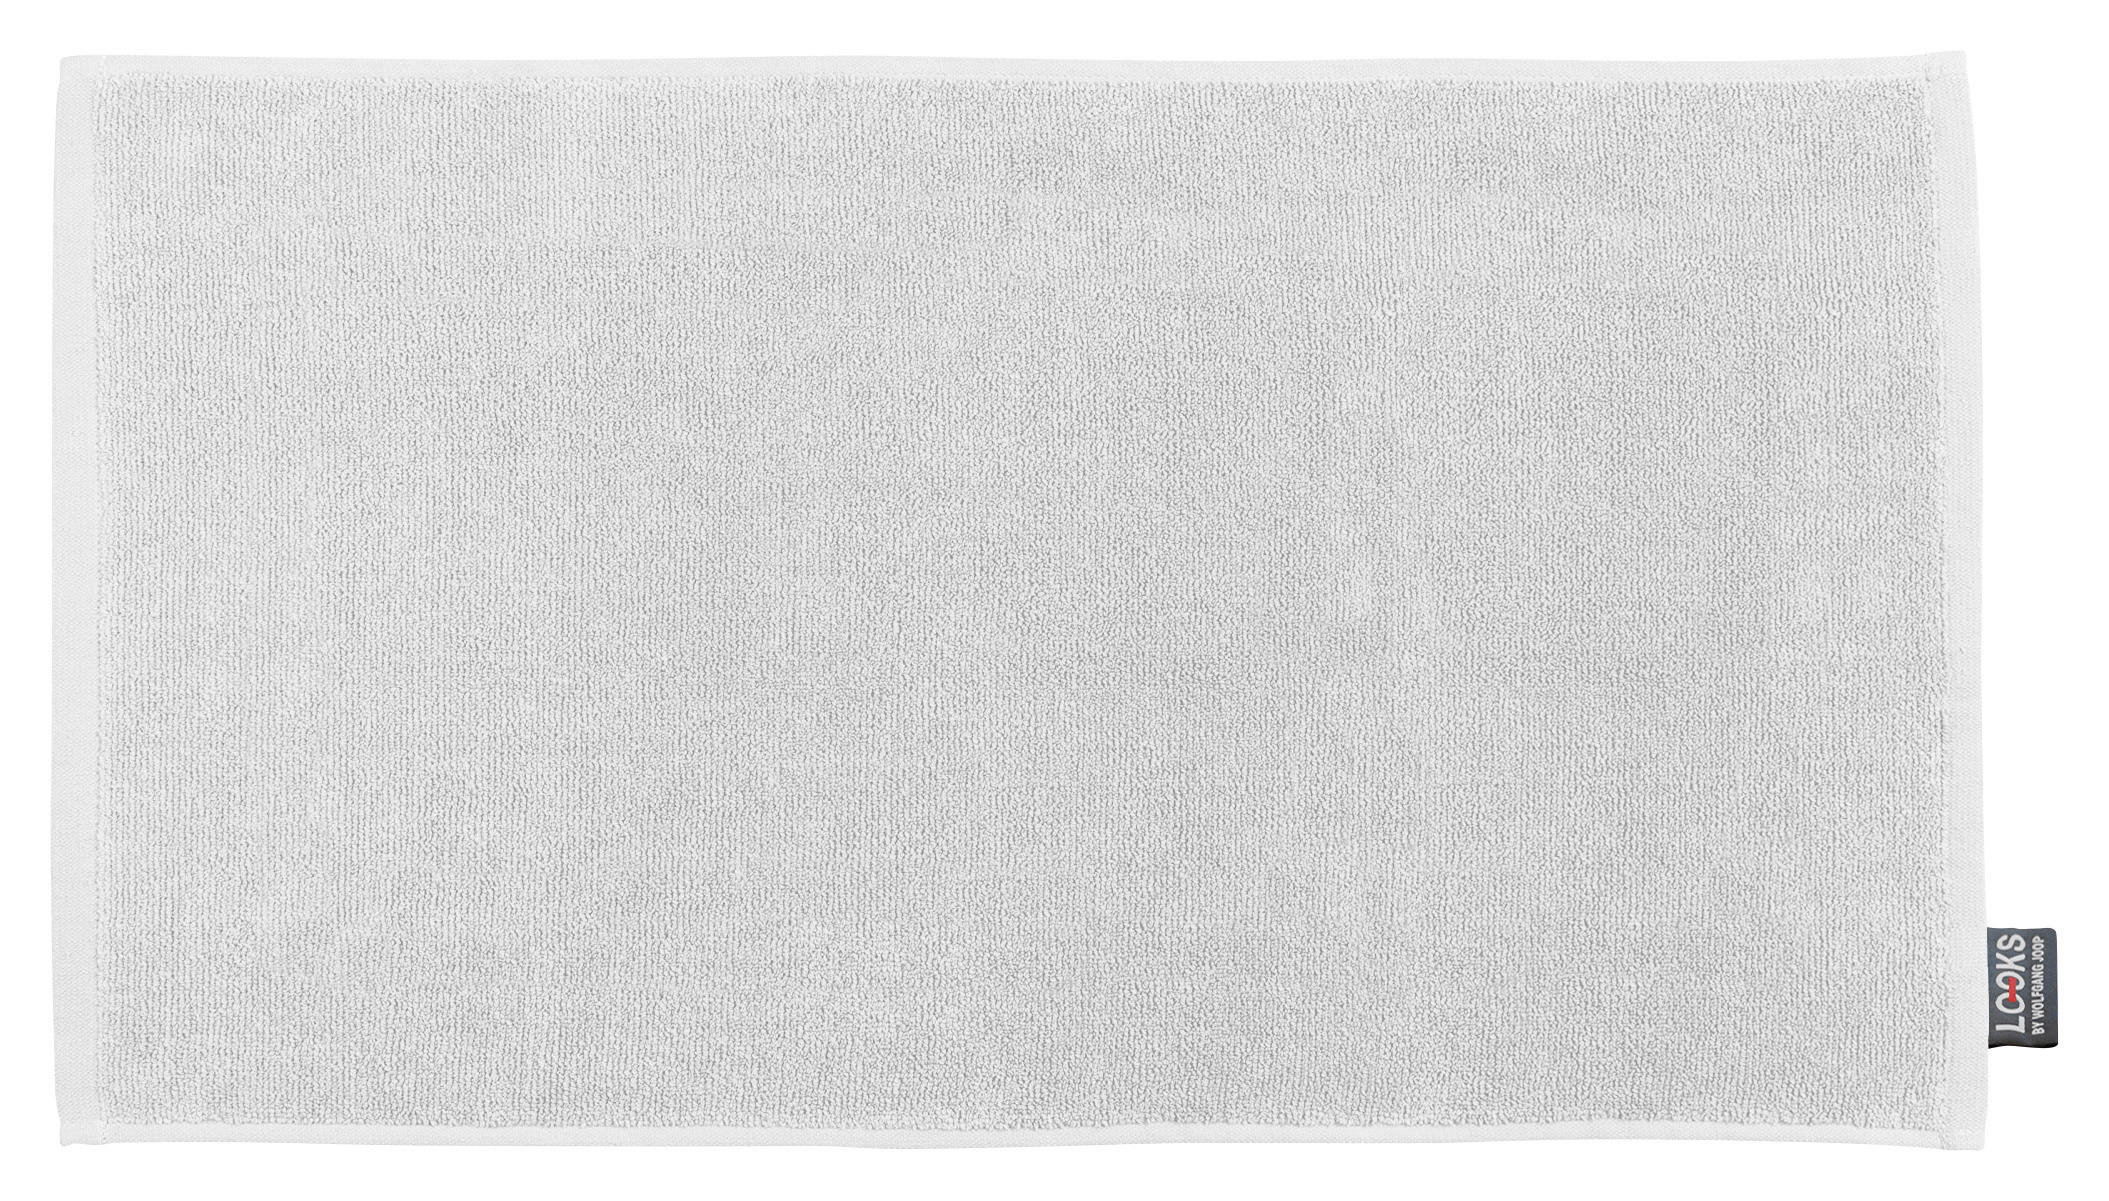 BADEMATTE 7001 Uni 50/70 cm  - Weiß, KONVENTIONELL, Naturmaterialien/Textil (50/70cm) - LOOKS by W.Joop